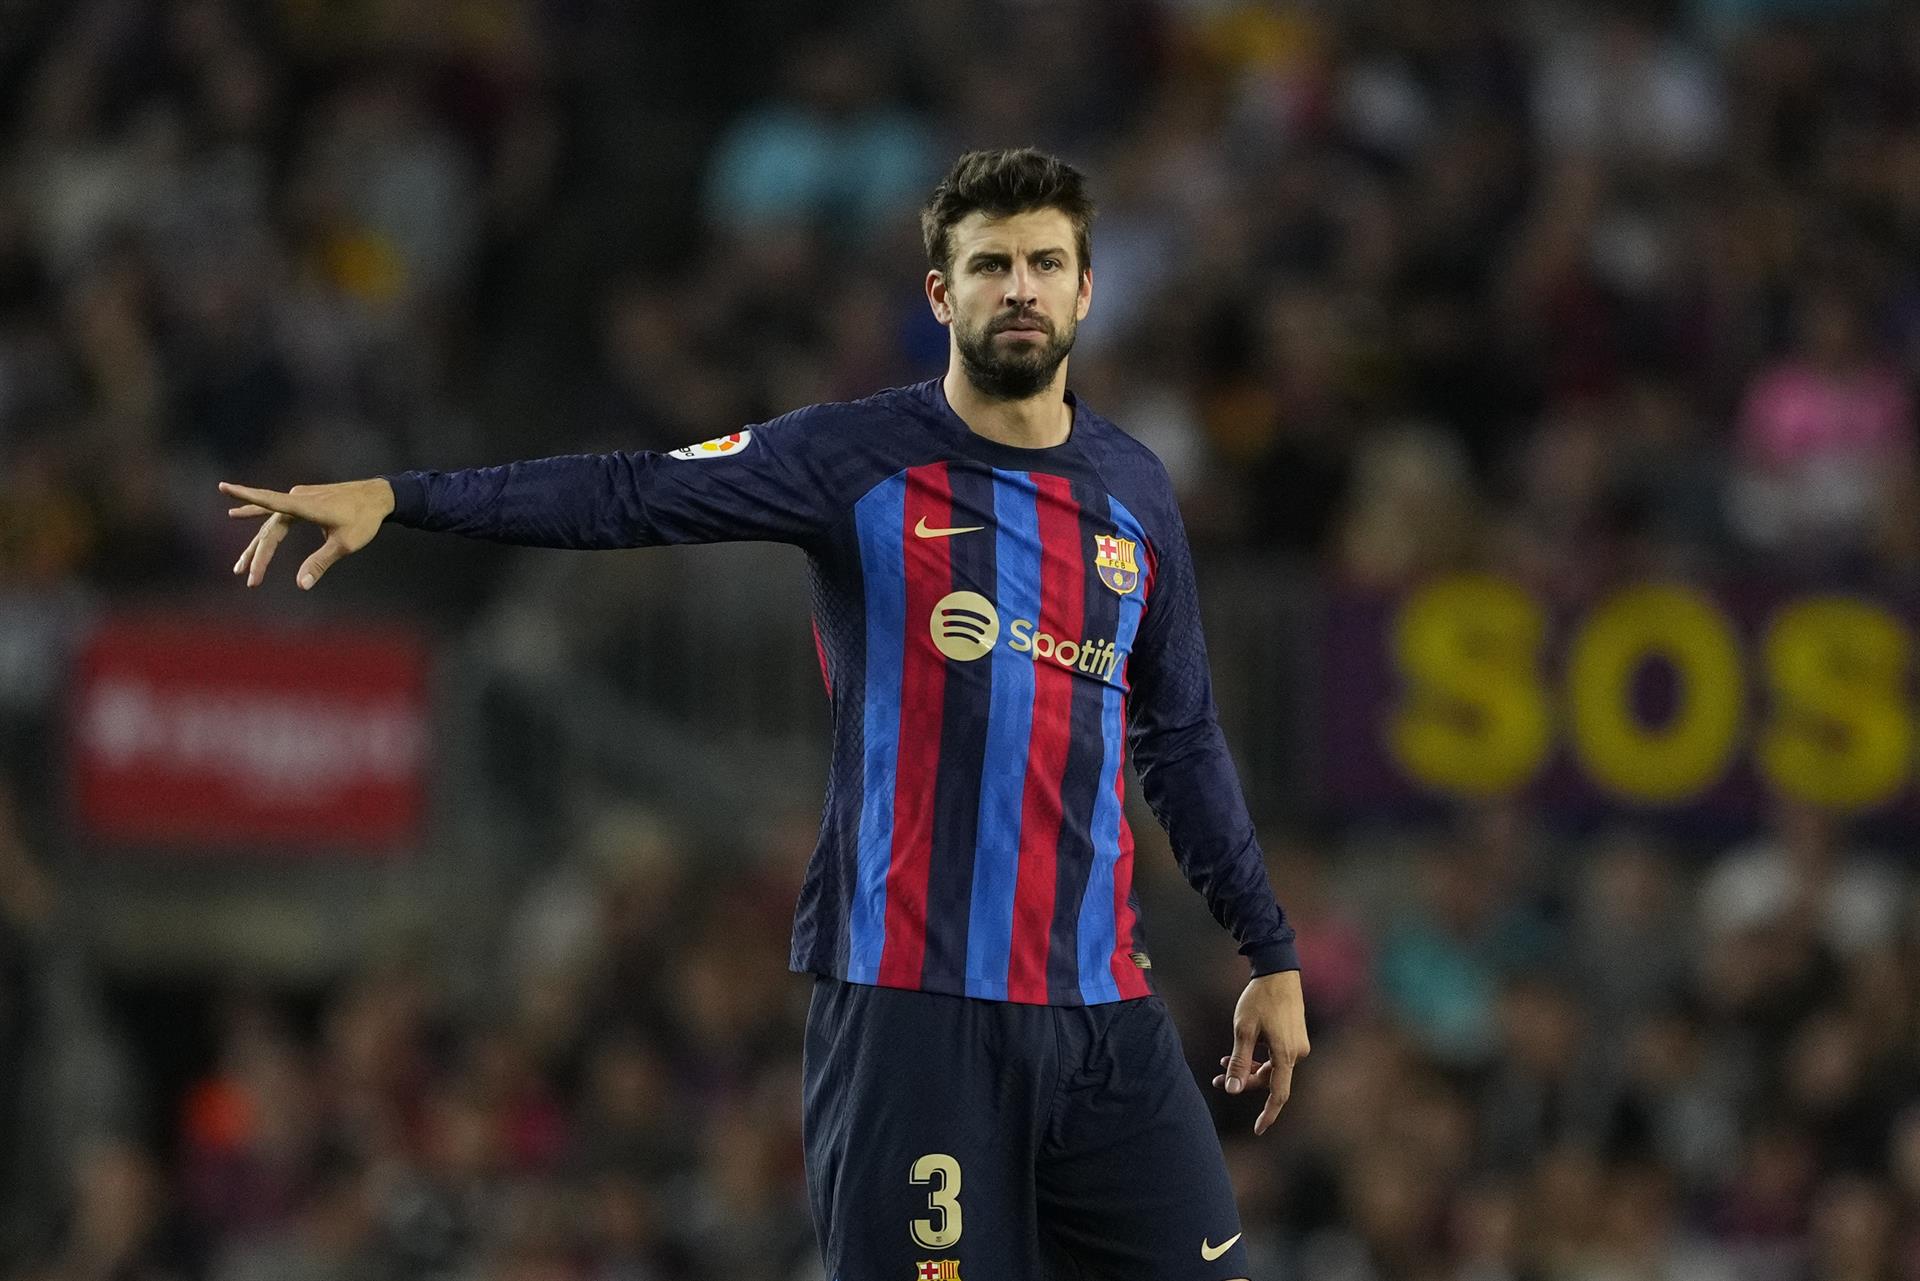 Los movimientos de Piqué que provocaron críticas de los hinchas del Barcelona (Video)